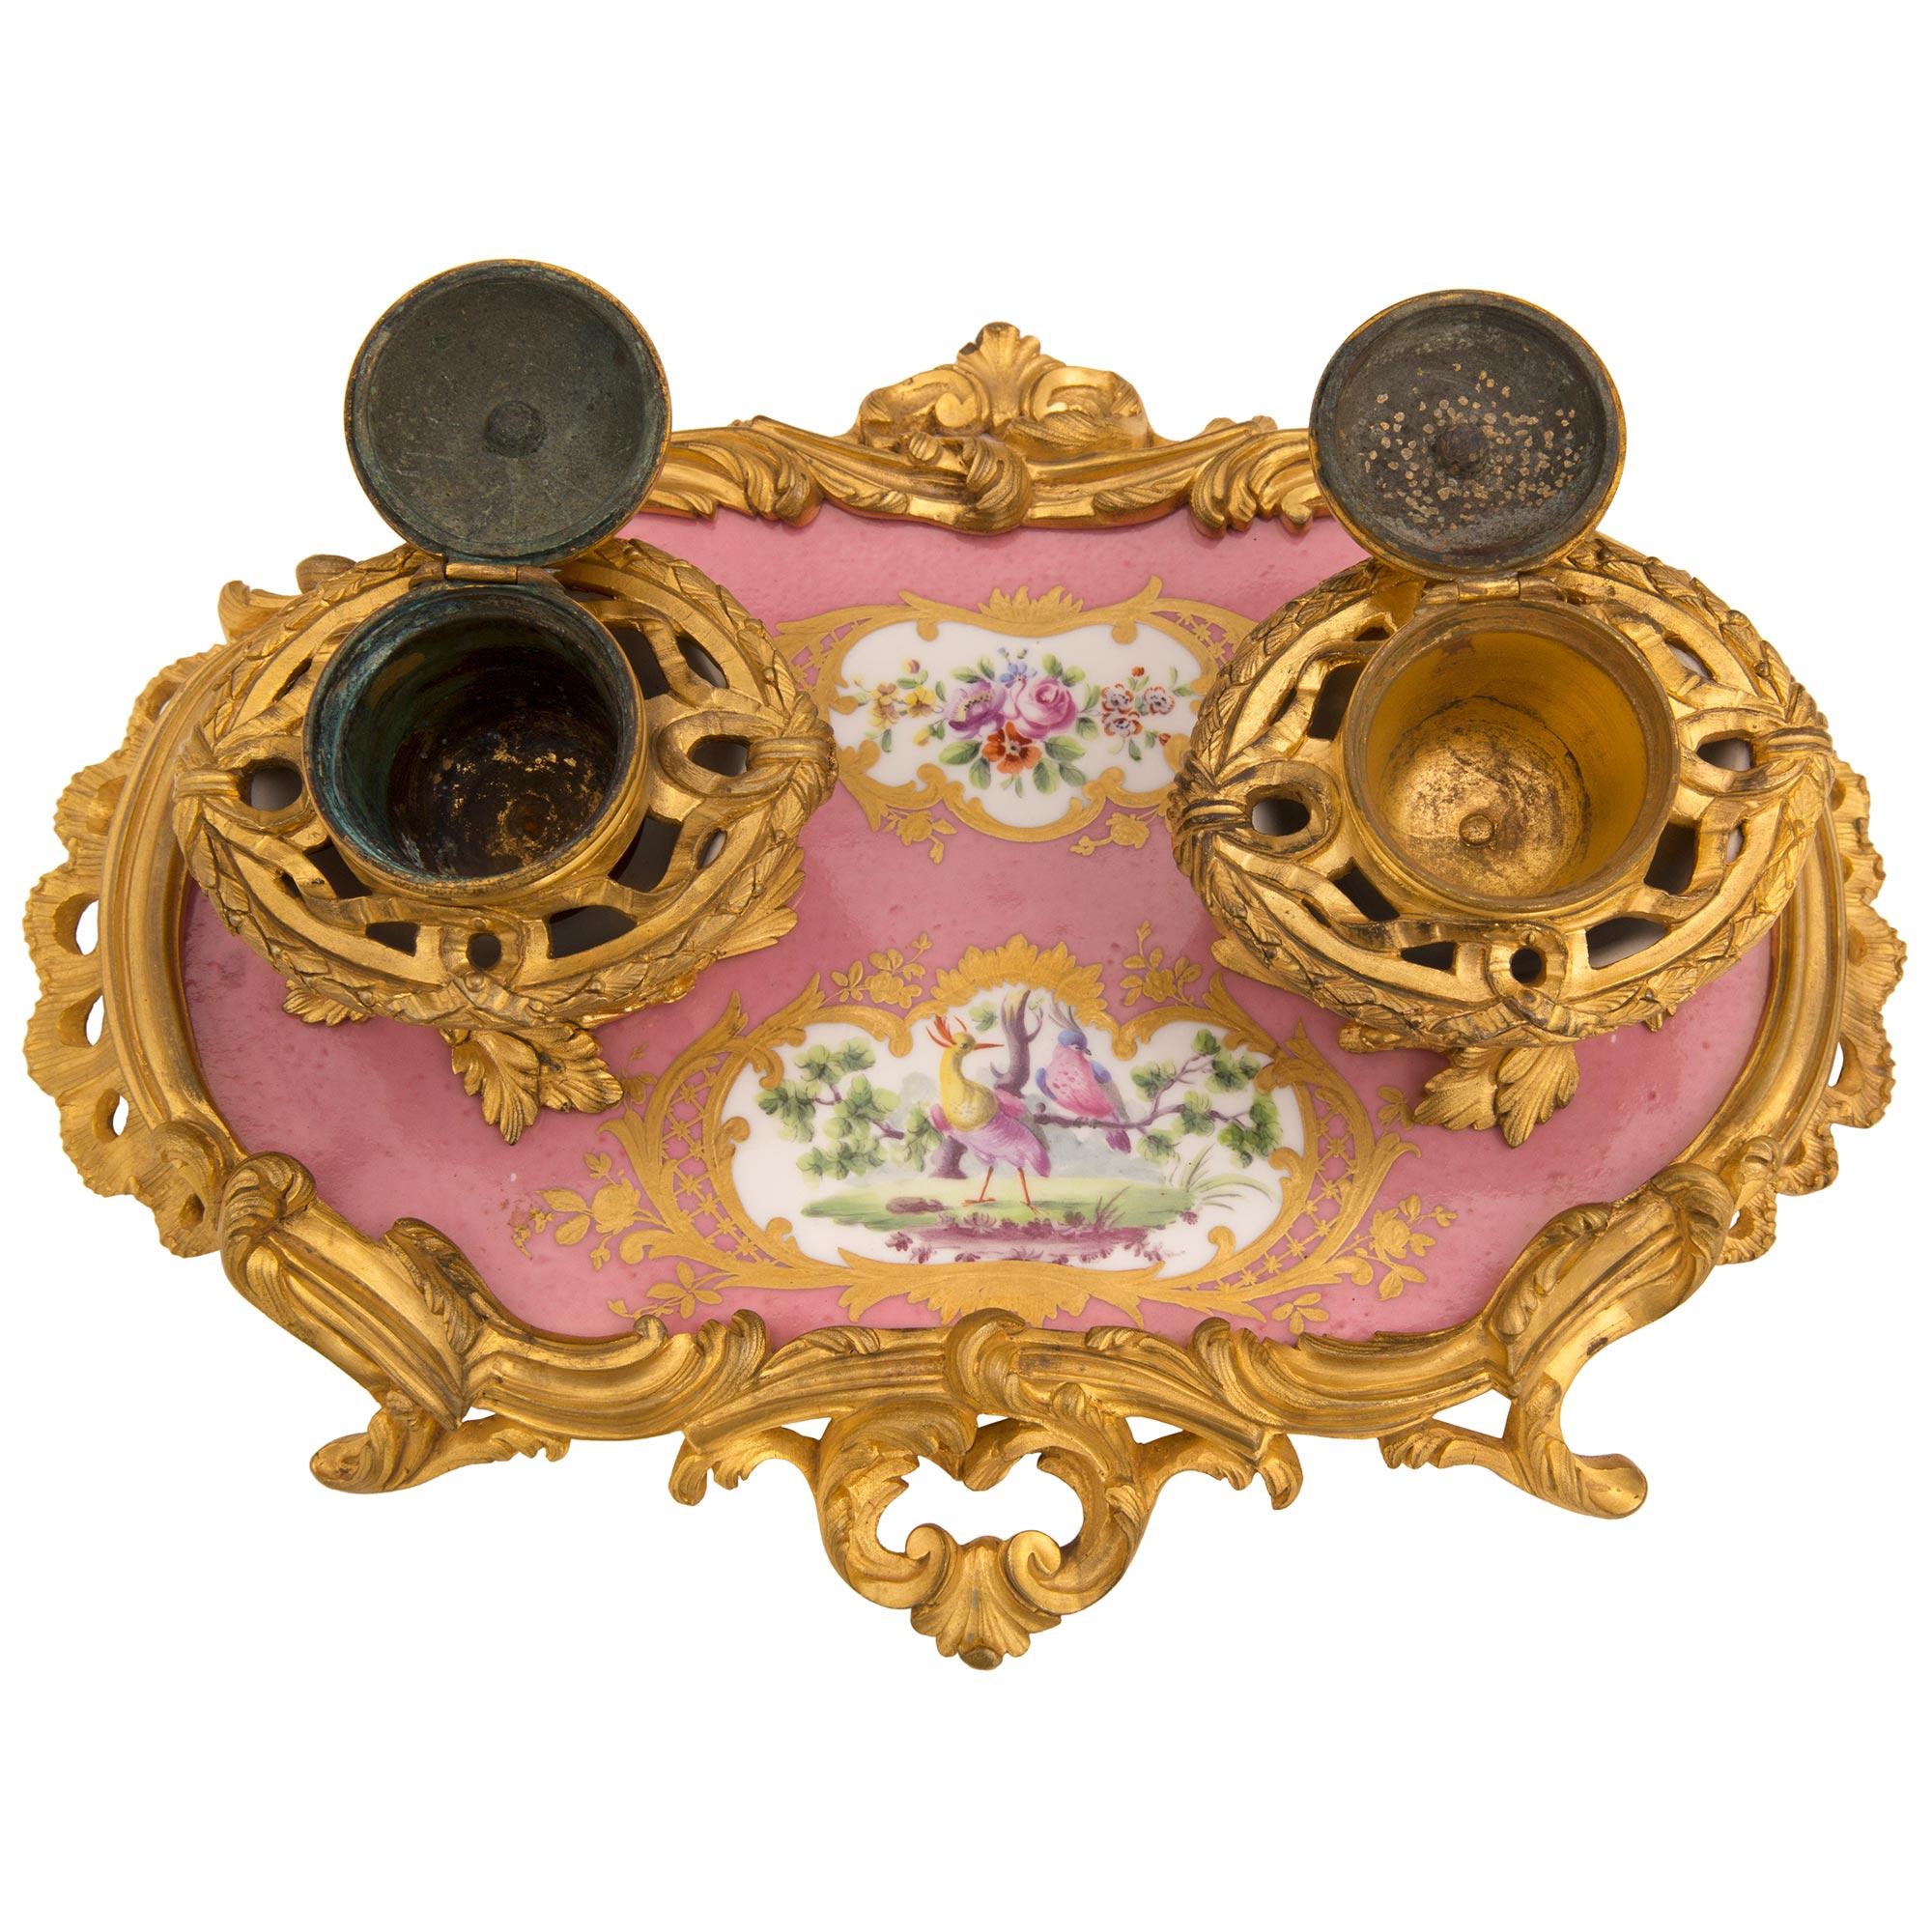 Eine schöne und außergewöhnlich hohe Qualität Französisch frühen 19. Jahrhundert Louis XV st. Sèvres Porzellan und Ormolu Tintenfass, signiert Sèvres. Das Tintenfass wird von auffälligen, durchbrochenen, verschnörkelten, blattförmigen